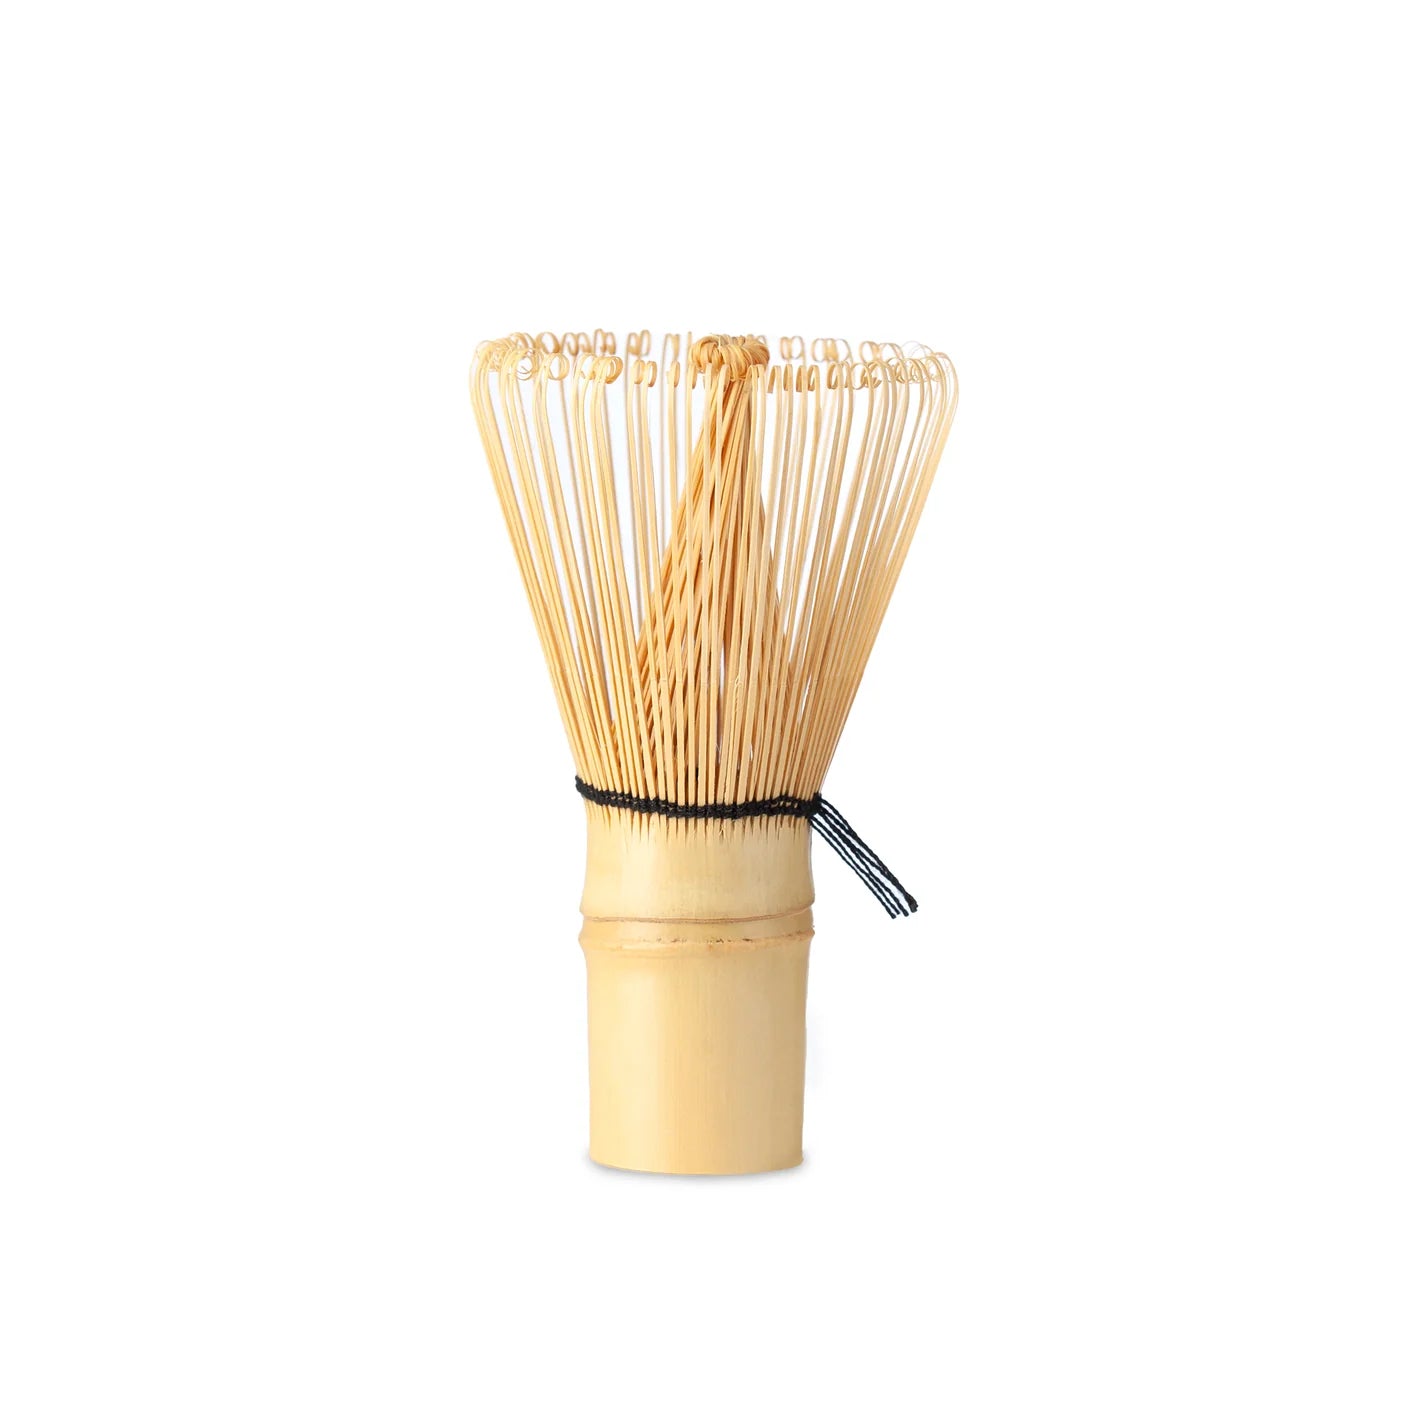 Bamboo Whisk (Chasen) 